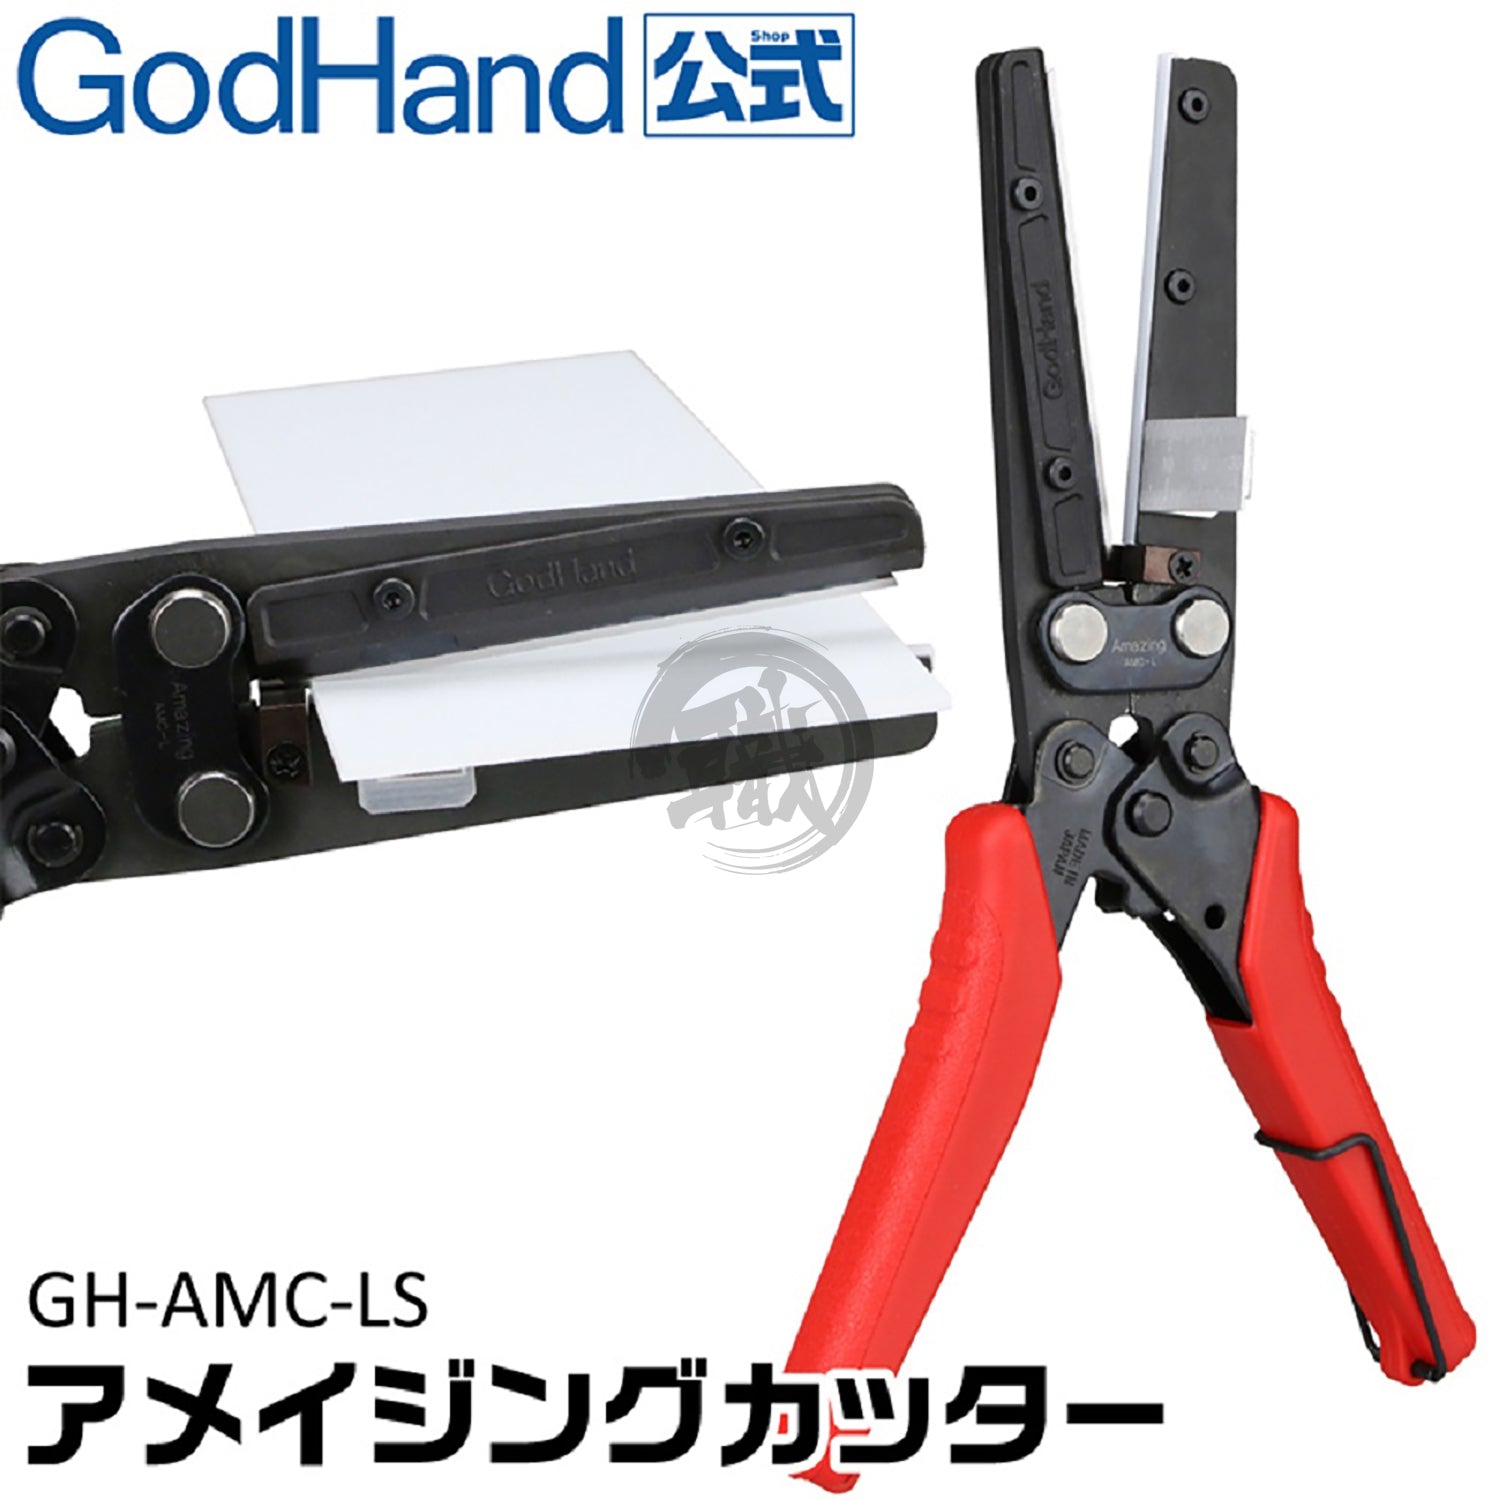 Godhand Tools - Amazing Cutter - ShokuninGunpla